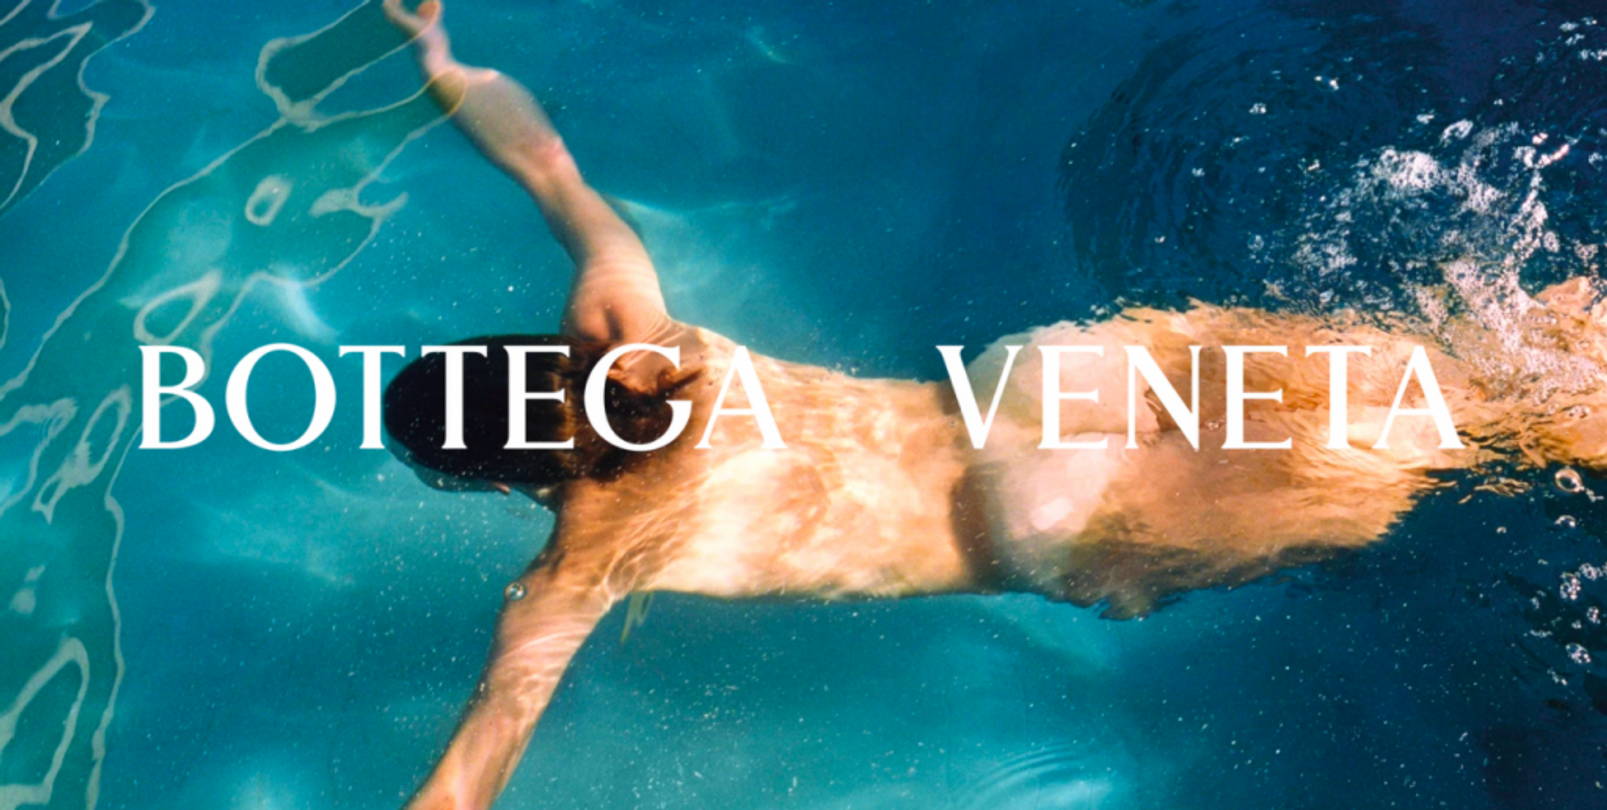 Bottega Veneta magazine